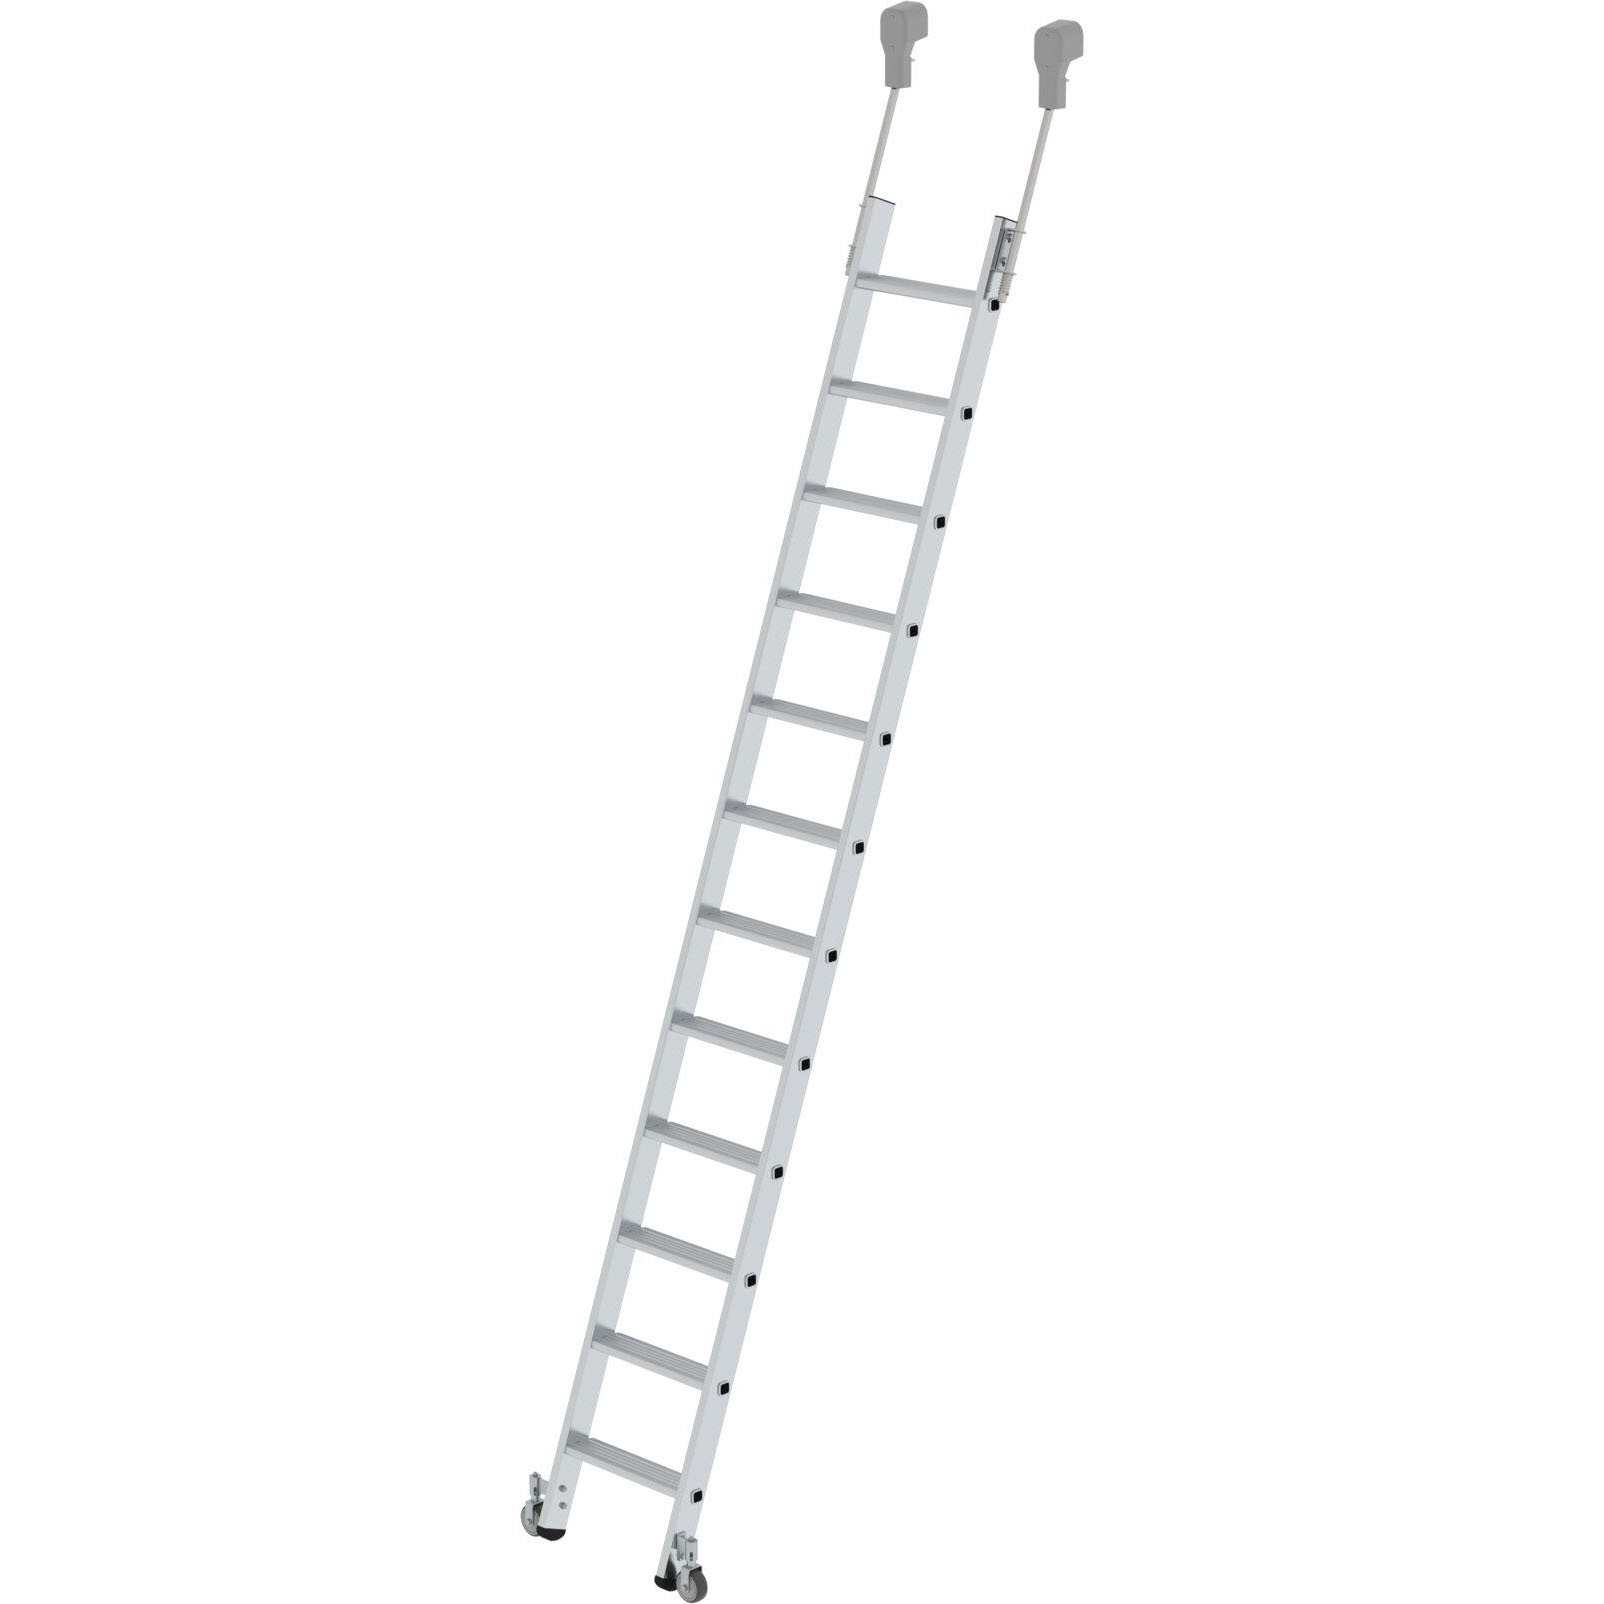 Мобильная стеллажная лестница из алюминия 12 ступеней Munk 041412